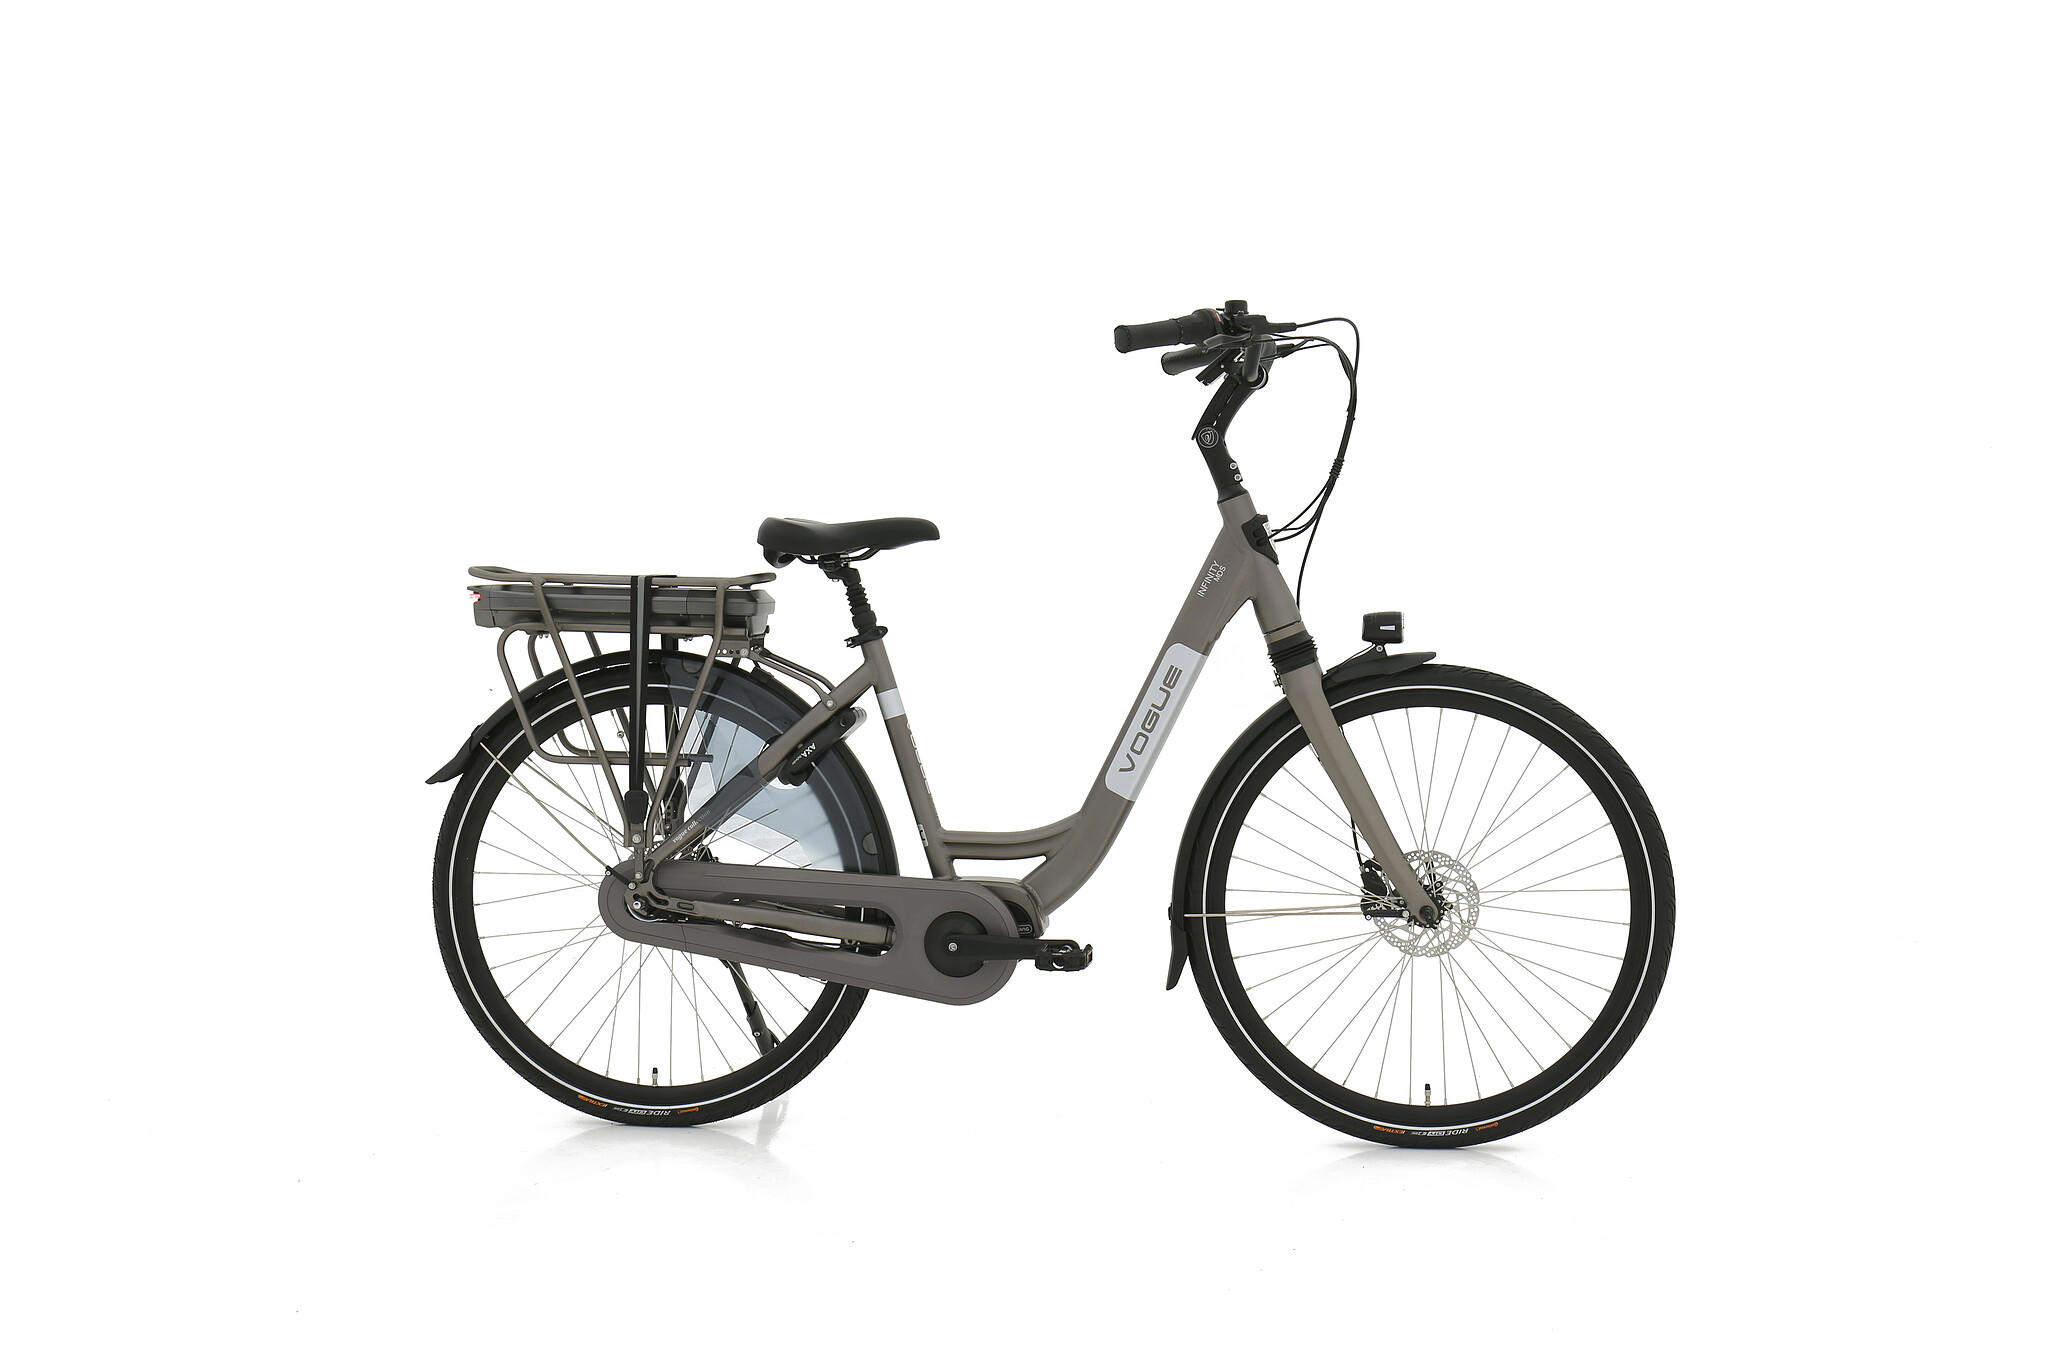 Vogue Elektrische fiets Infinity M300 dames gray 53cm 468 Watt - Grijs